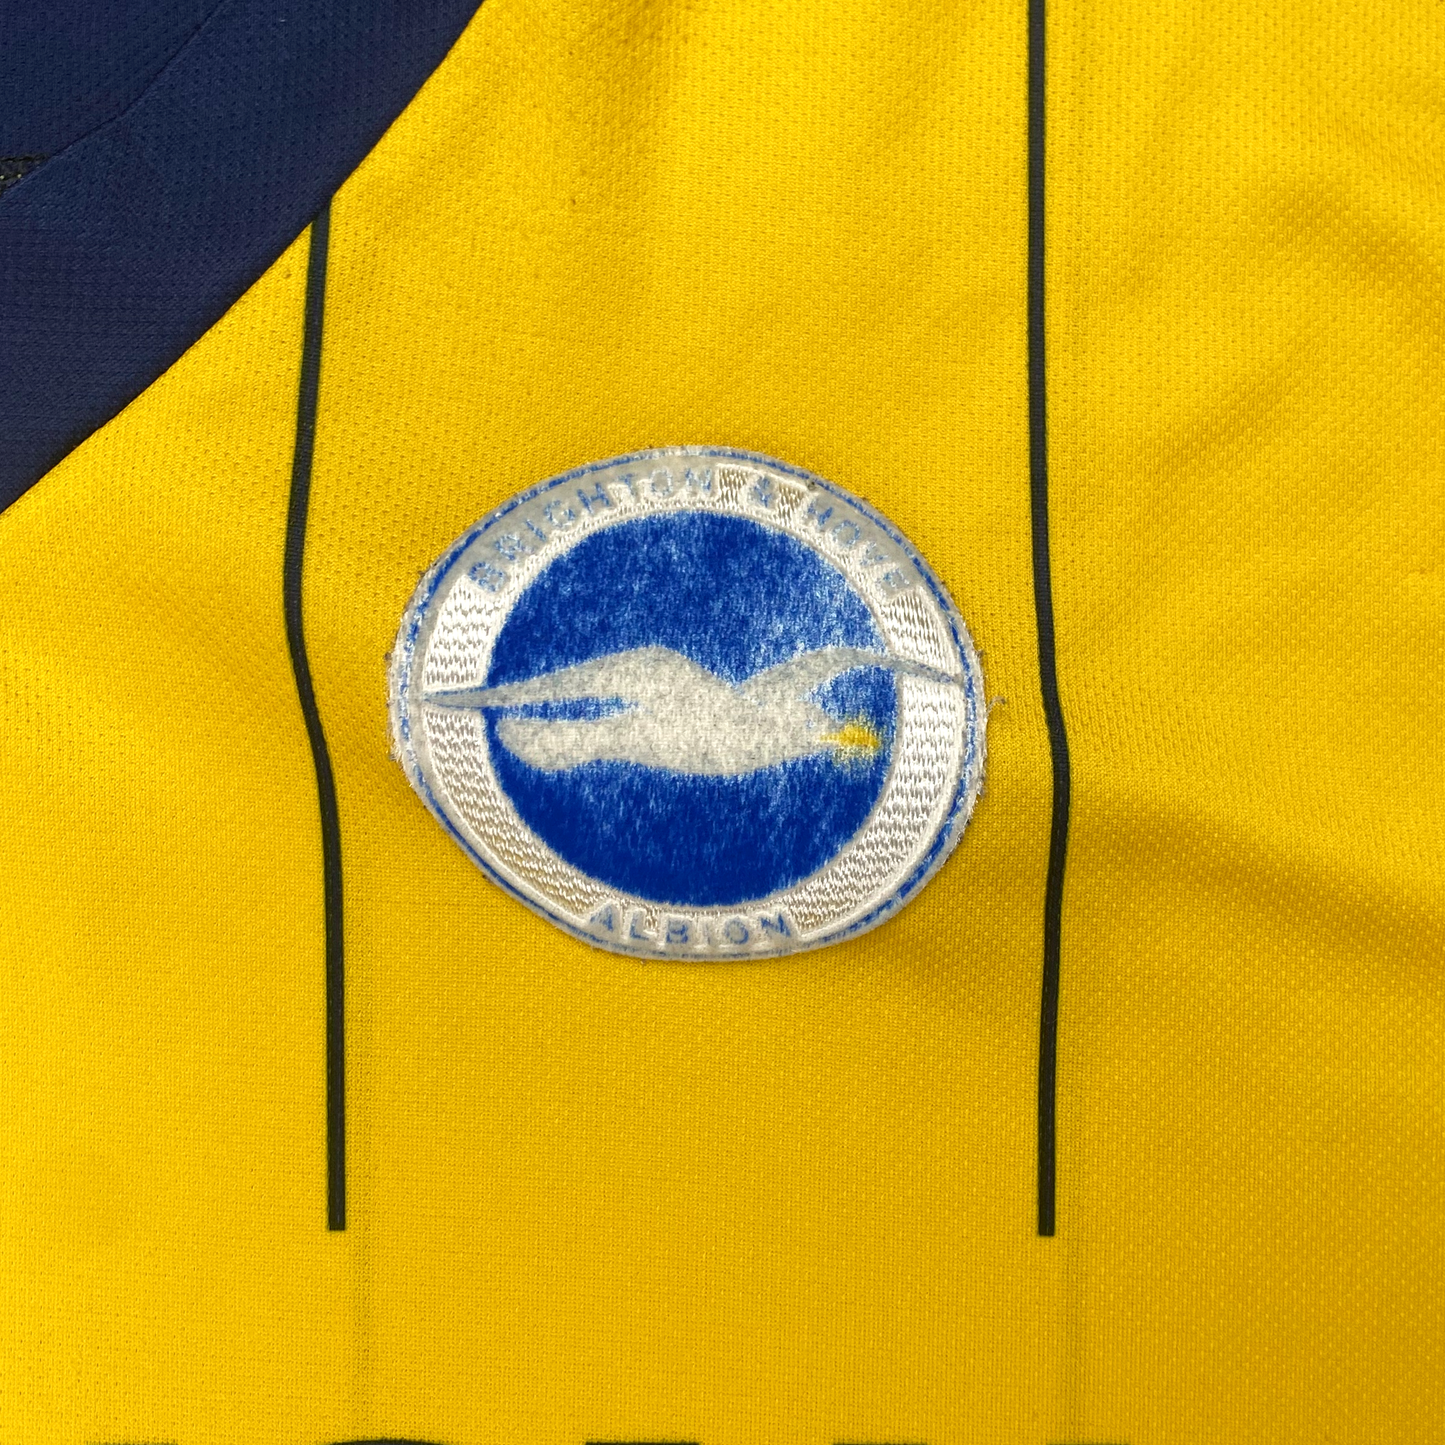 Brighton & Hove Albion Away Shirt (2013-14) | XXXL